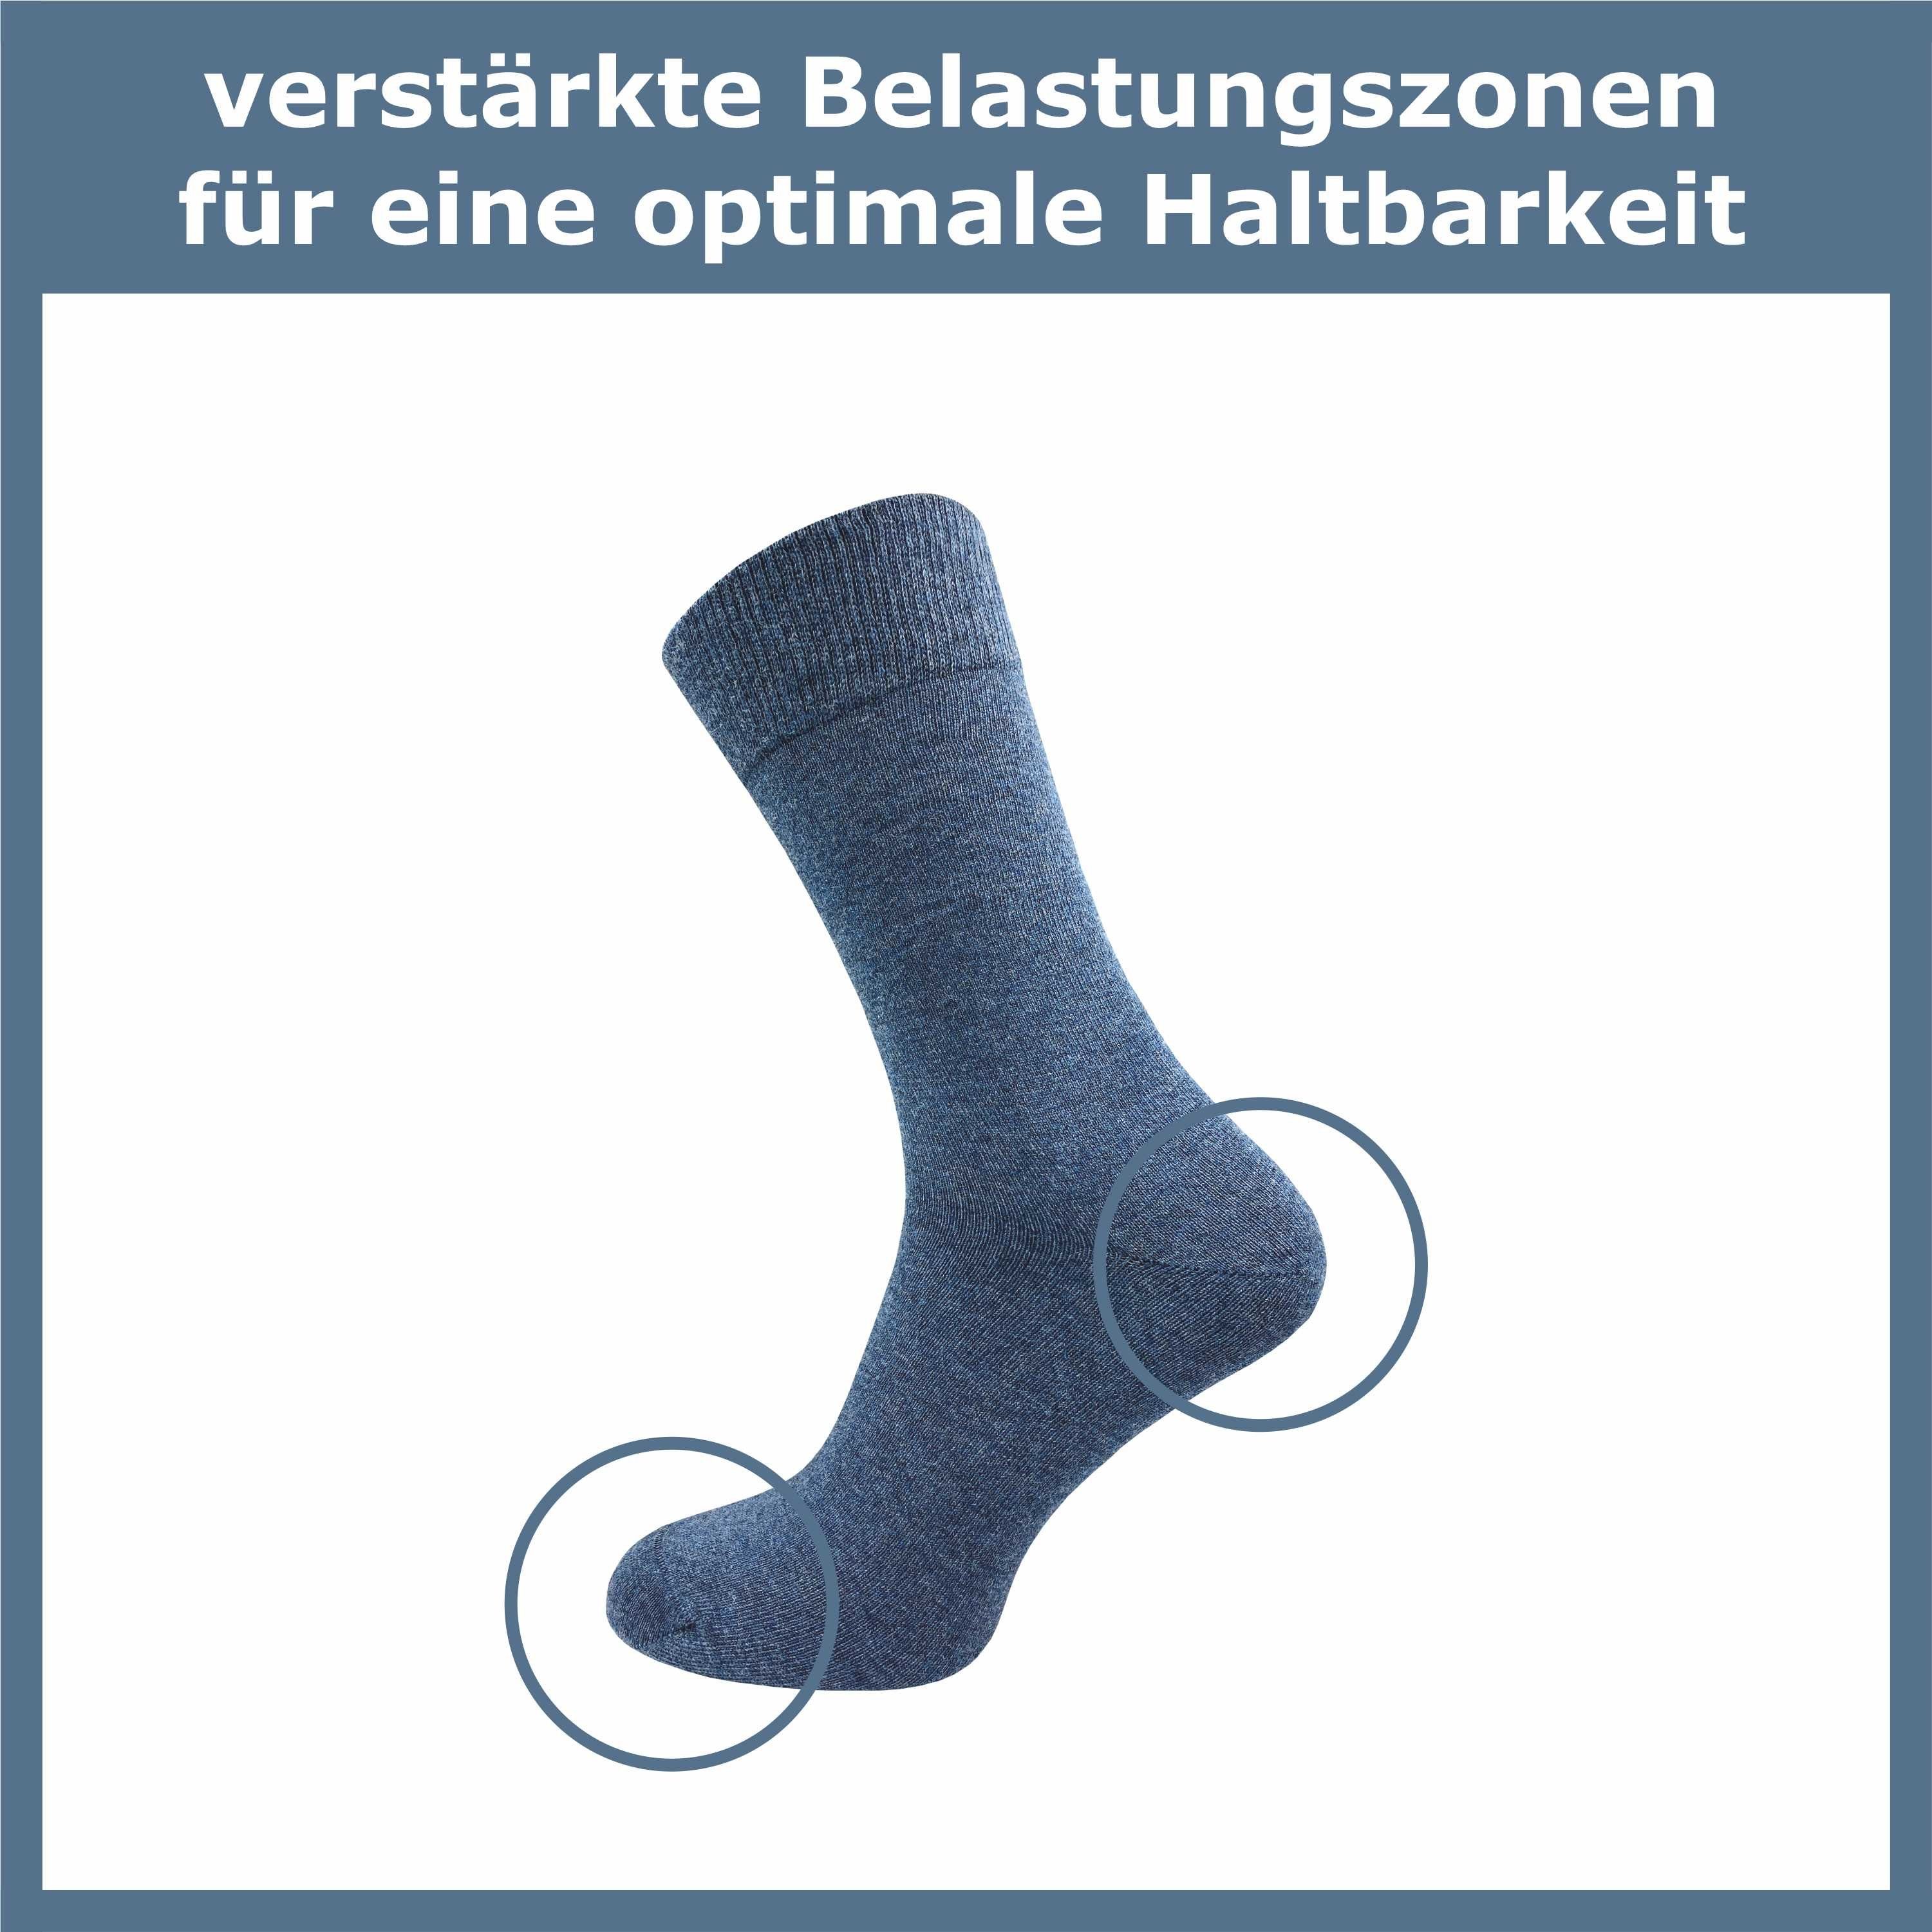 Baumwolle aus und Herren (10 anspruchsvollen hochwertiger für Naht schwarz, Basicsocken jeans Socken drückende & blau ohne in für grau, Paar) GAWILO den Damen braun Alltag